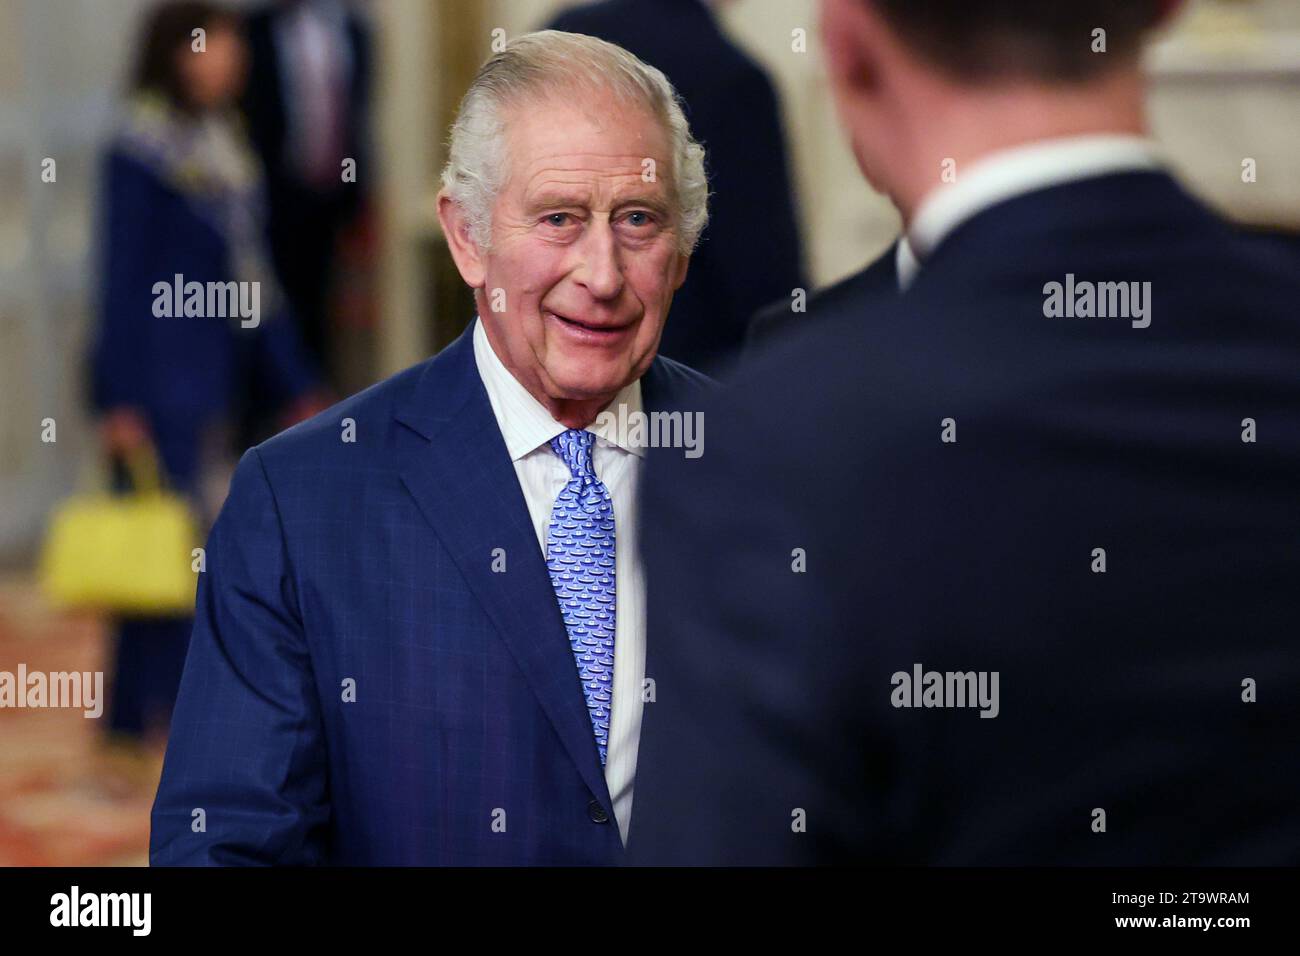 König Karl III. Während eines Empfangs im Buckingham Palace, London, anlässlich des Global Investment Summit 2023. Bilddatum: Montag, 27. November 2023. Stockfoto